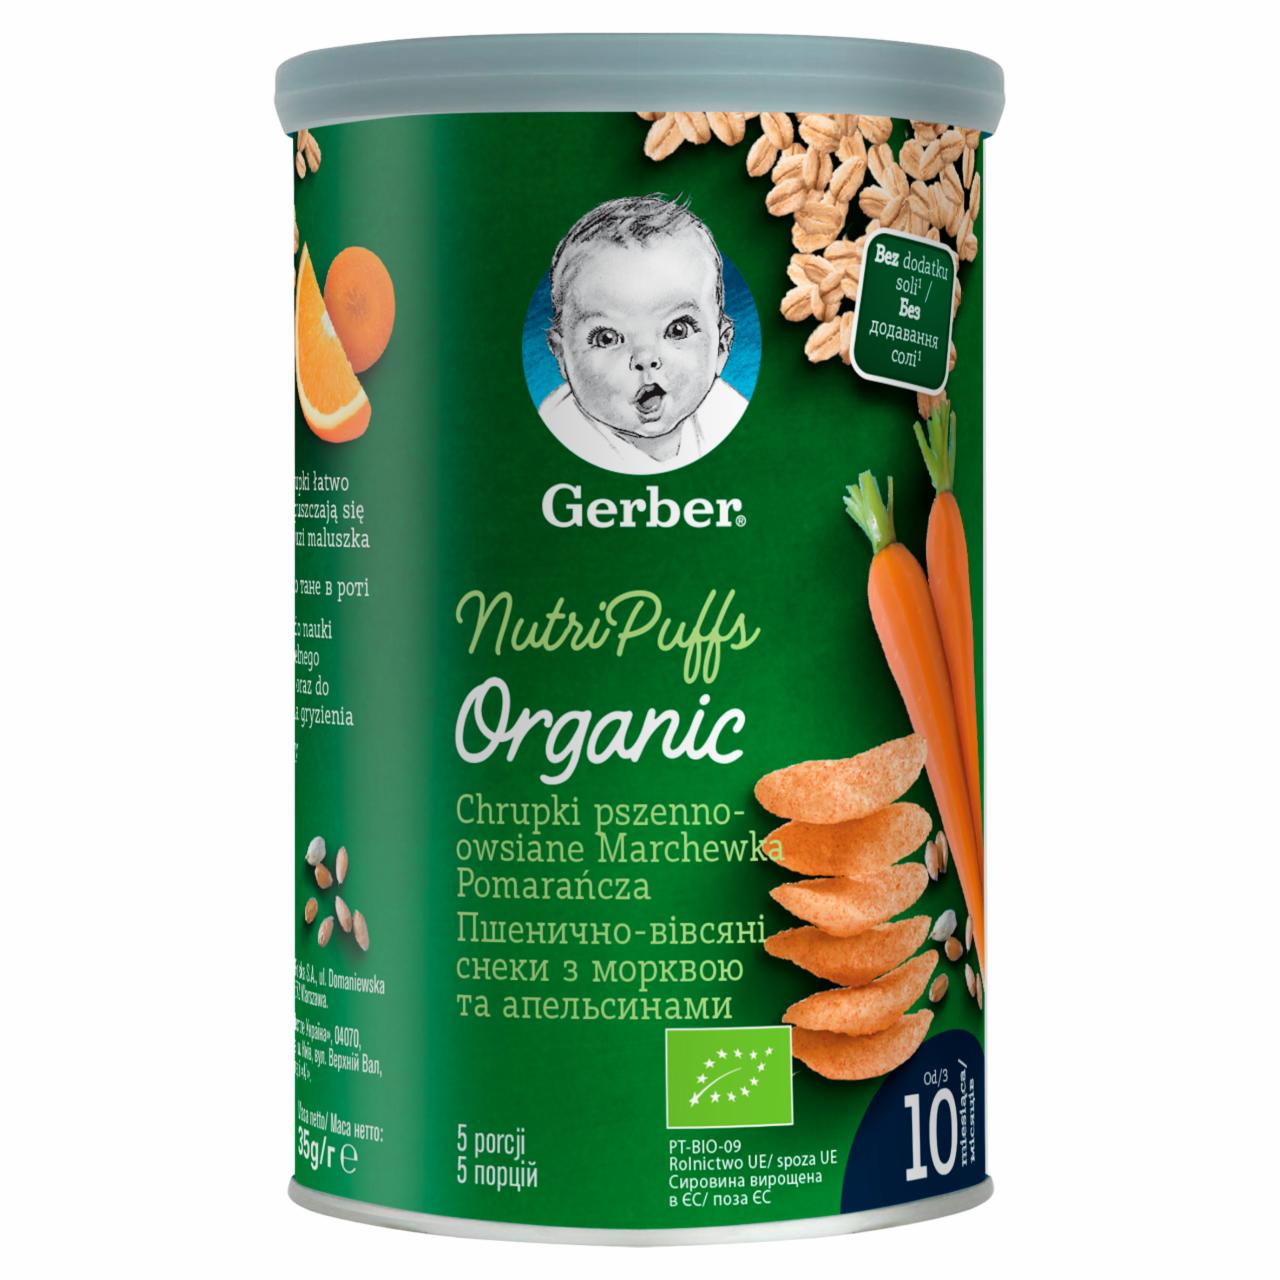 Zdjęcia - Gerber Chrupki pszenno-owsiane marchewka pomarańcza dla niemowląt od 10. miesiąca 35 g